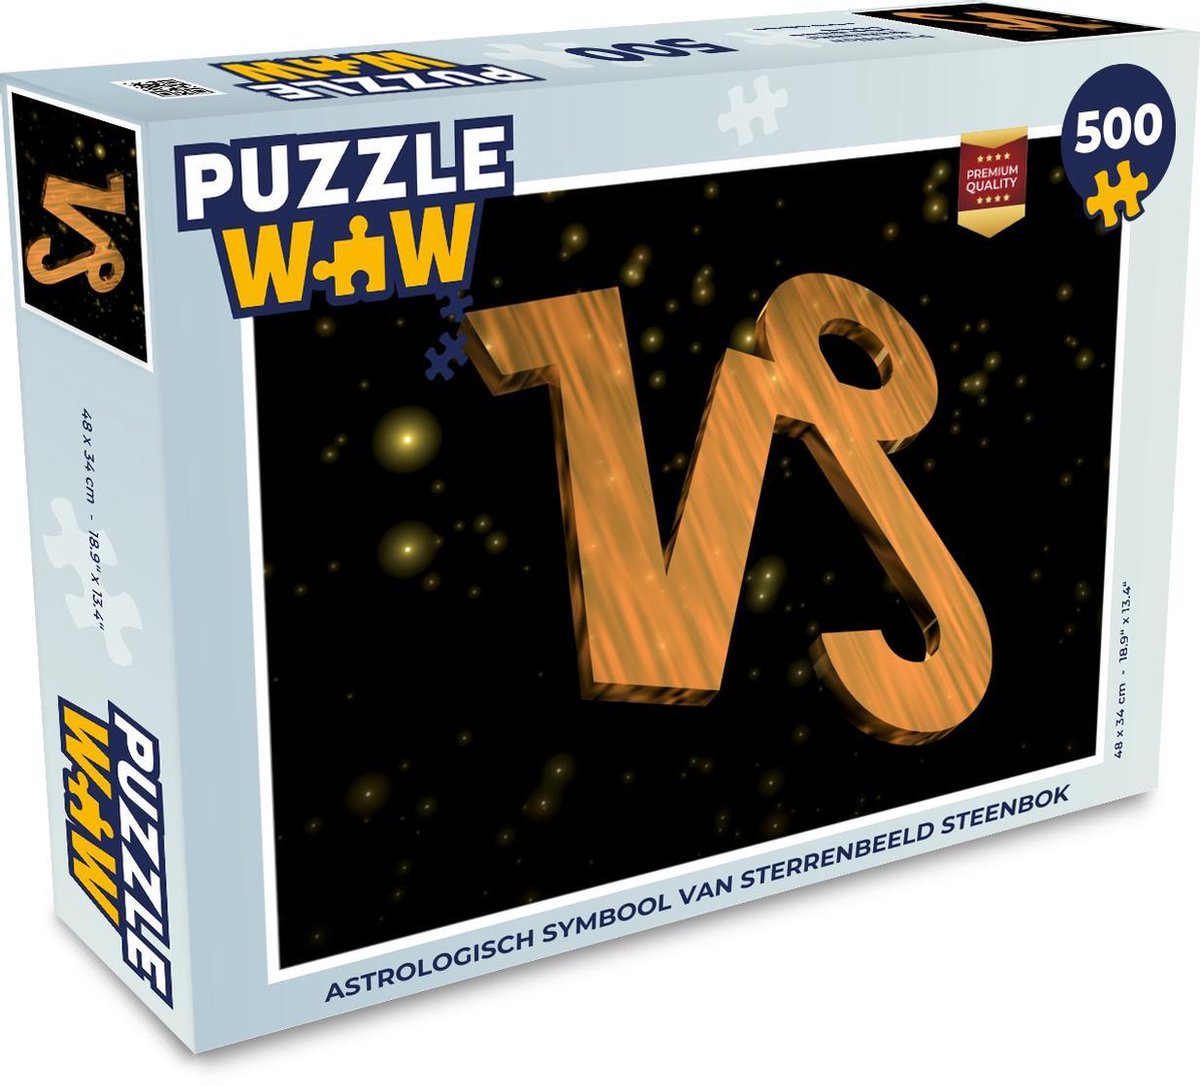 Afbeelding van product Puzzel 500 stukjes Steenbok sterrenbeeld - Astrologisch symbool van sterrenbeeld steenbok - PuzzleWow heeft +100000 puzzels